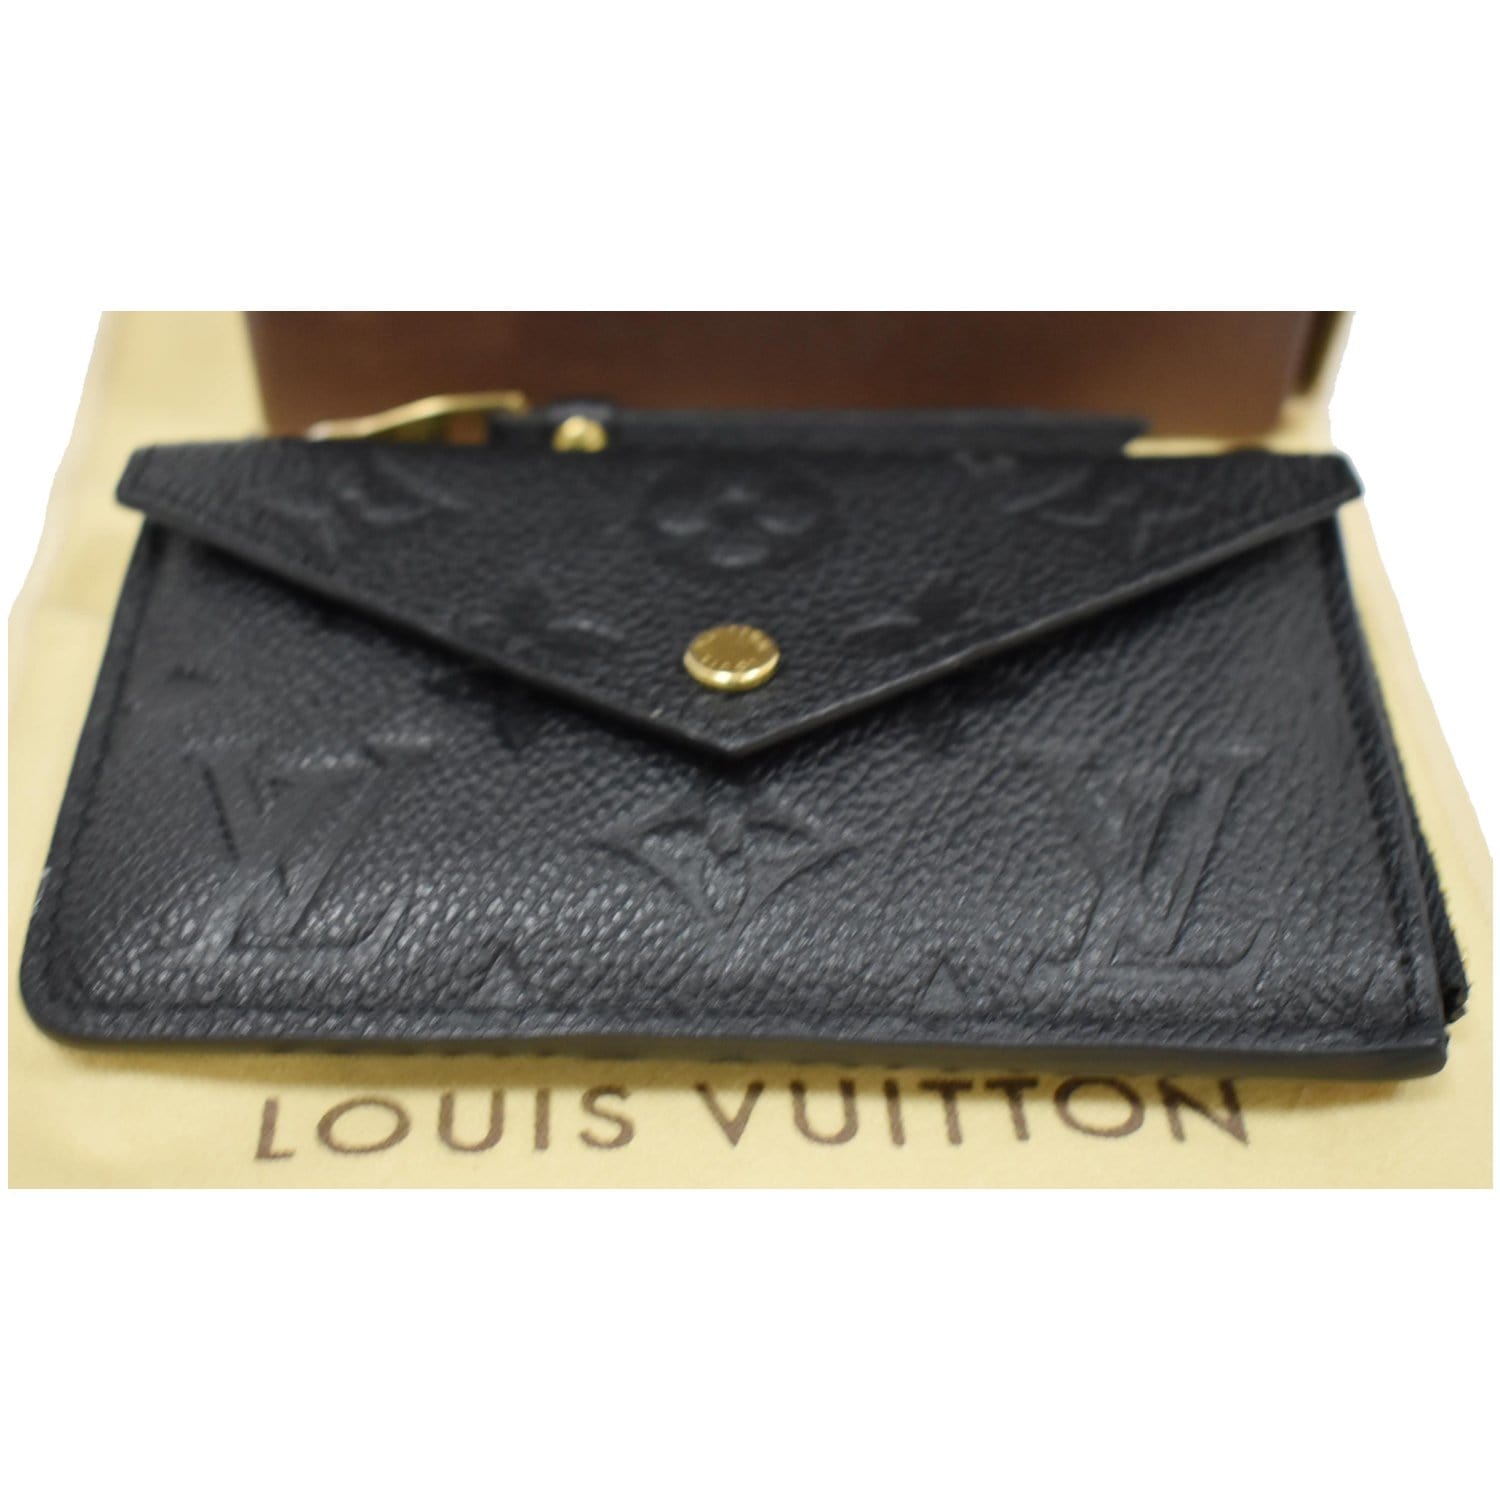 Louis Vuitton UNBOXING Card Holder Recto Verso Monogram Empreinte